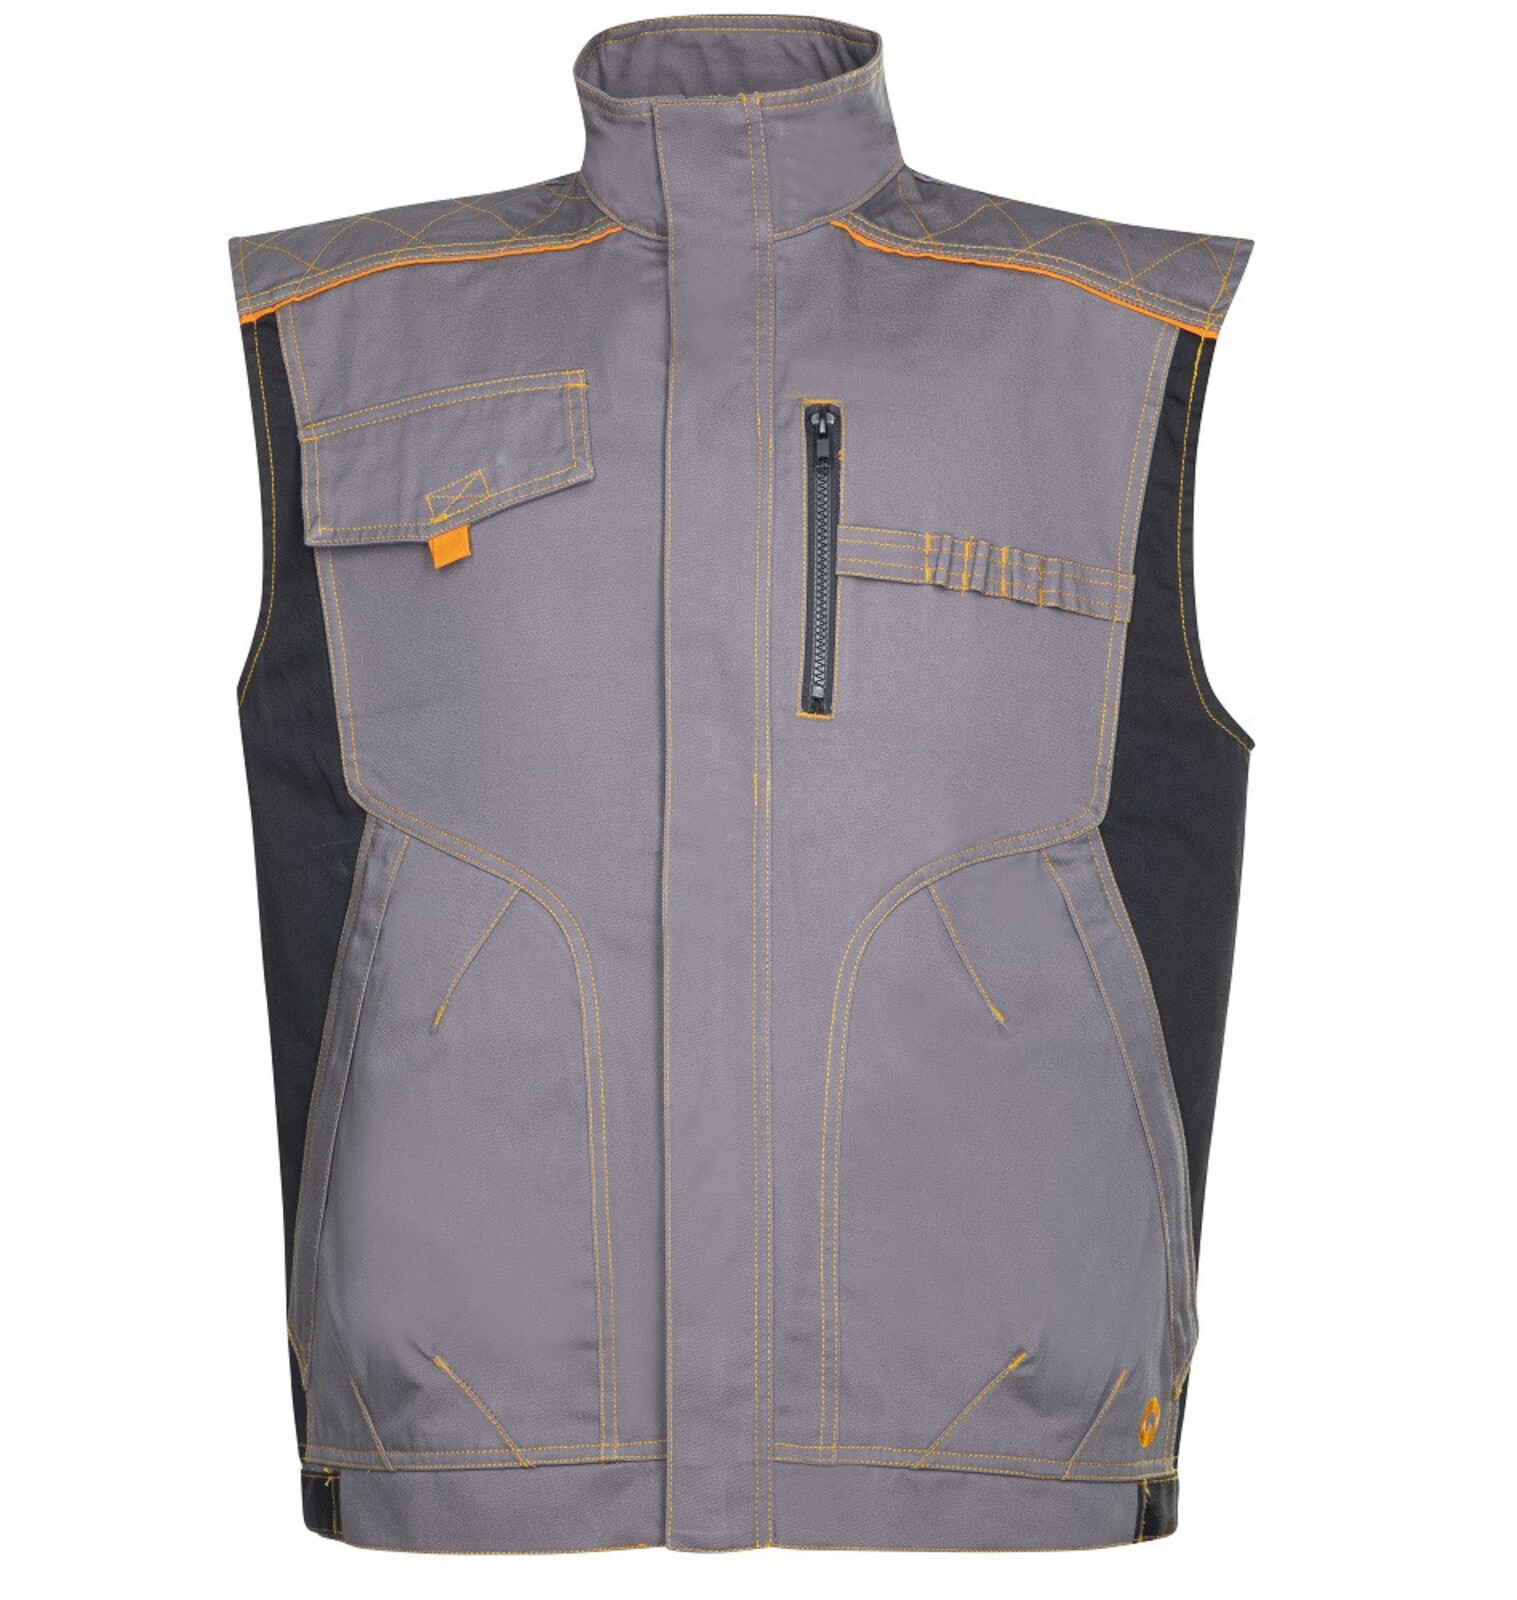 Pánska montérková vesta Ardon Vision - veľkosť: 60, farba: sivá/oranžová